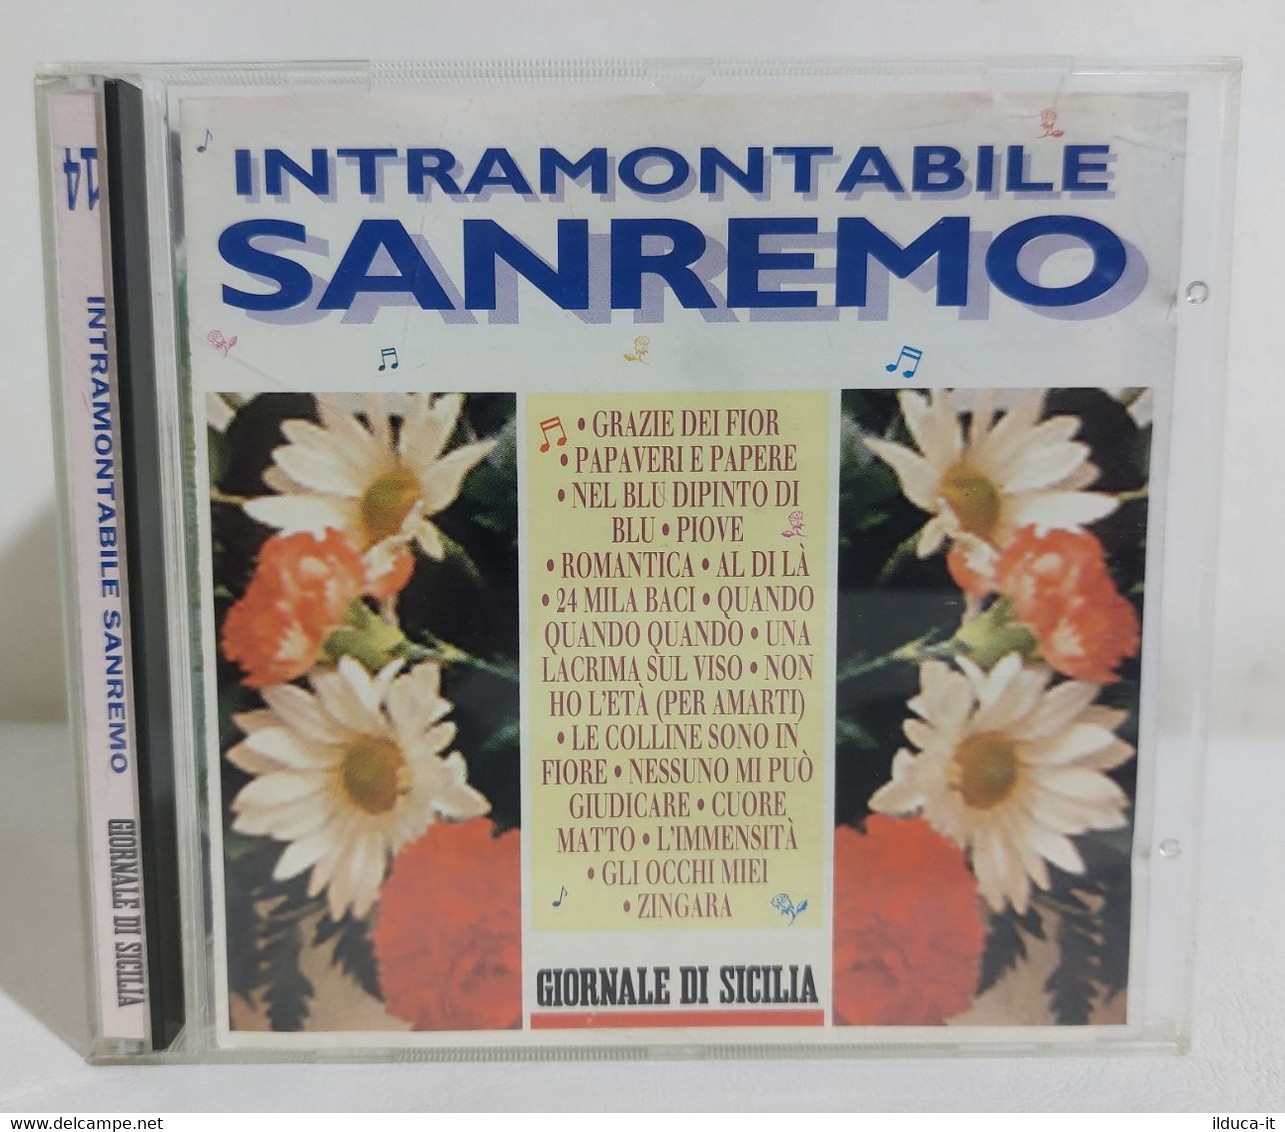 I110397 CD - Intramontabile Sanremo (Nilla Pizzi Modugno Dallara Goich...) - Compilaties